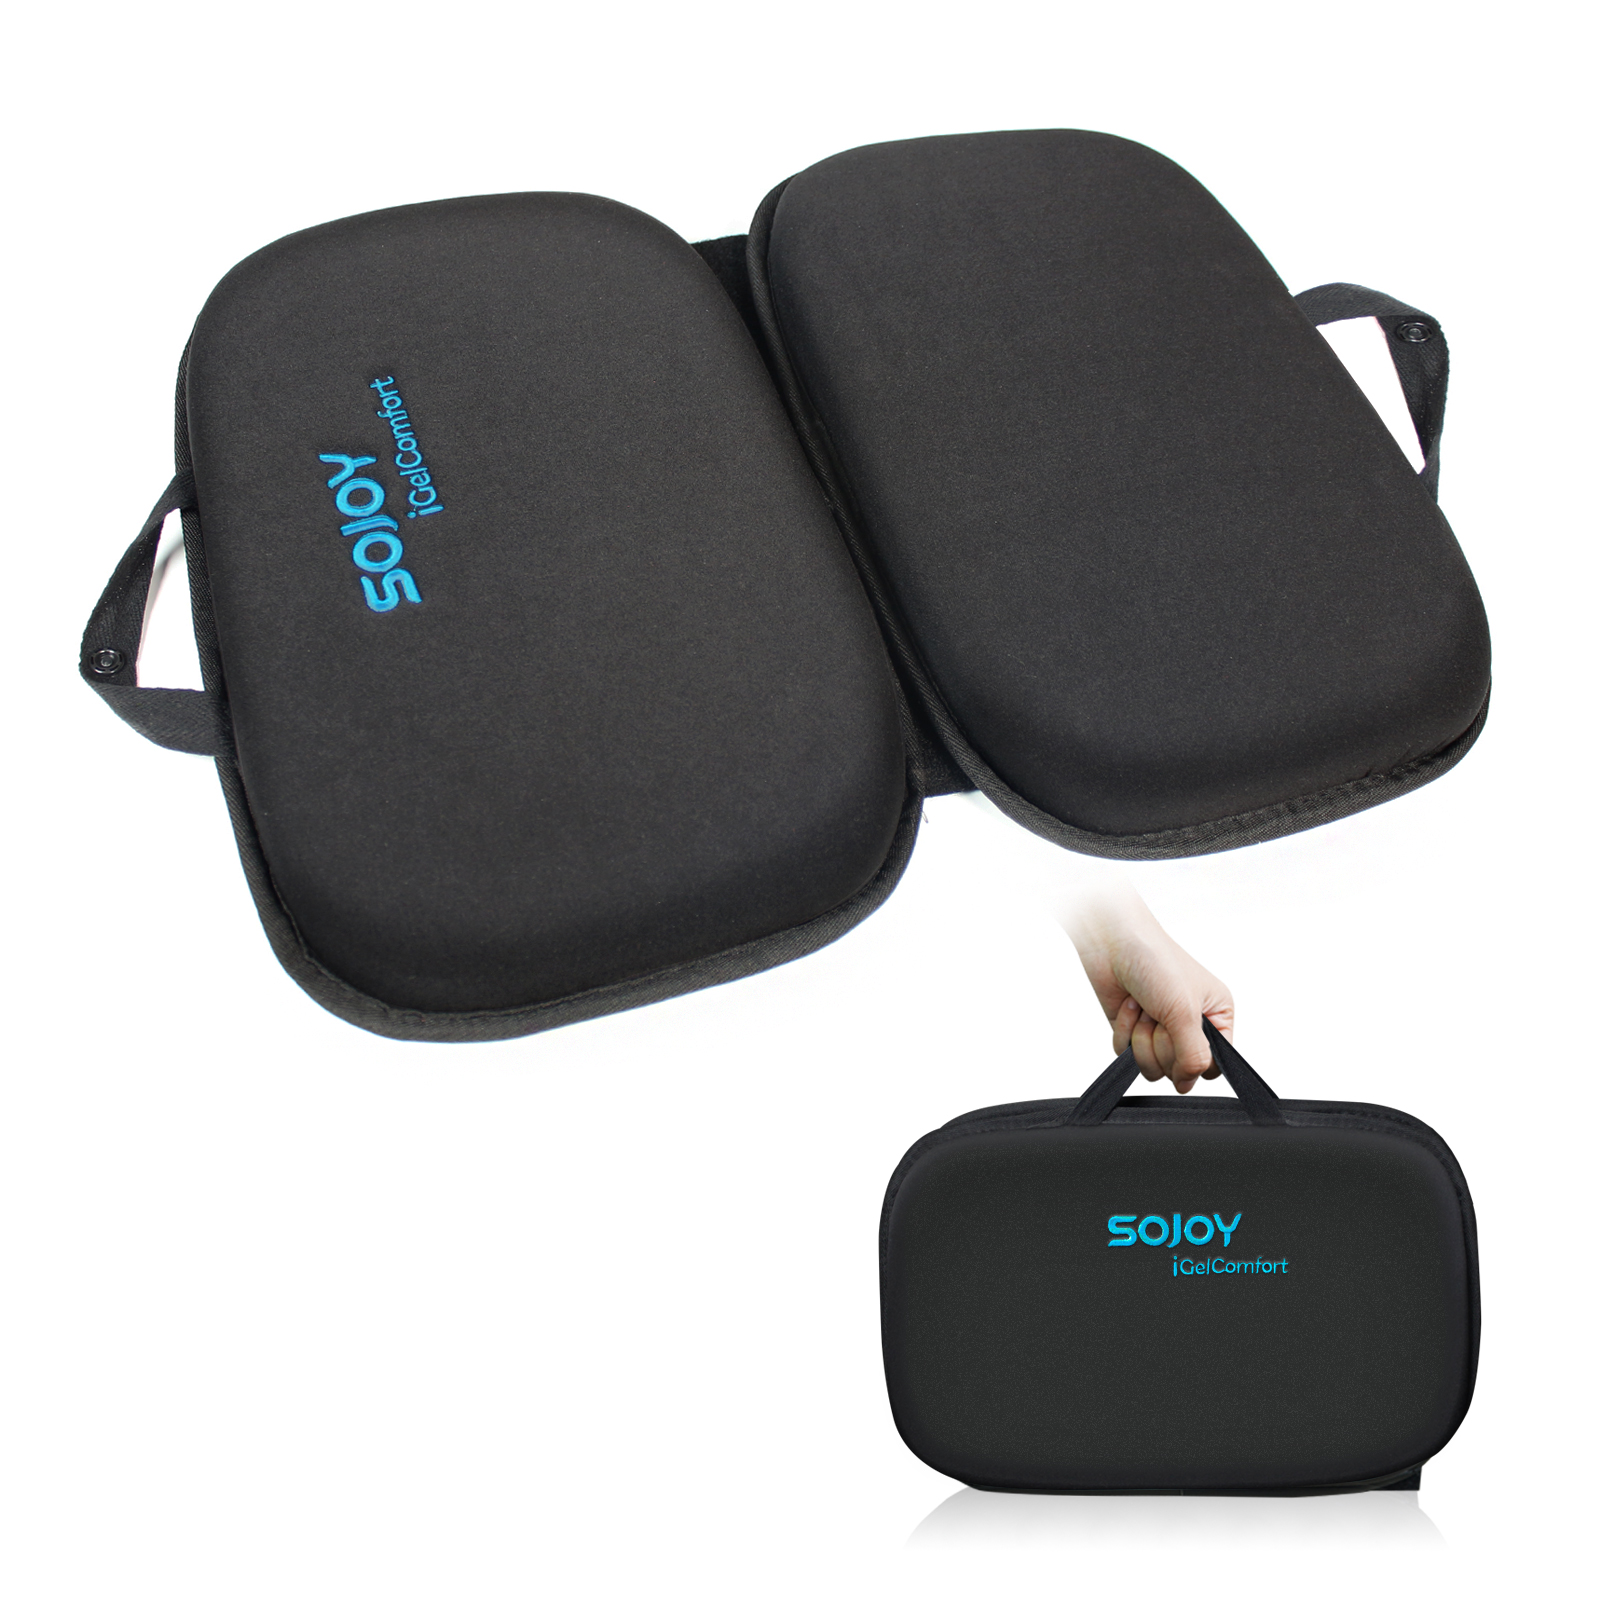 Sojoy Gel Seat Cushion with Memory Foam,Easy Portable Travel Cushion